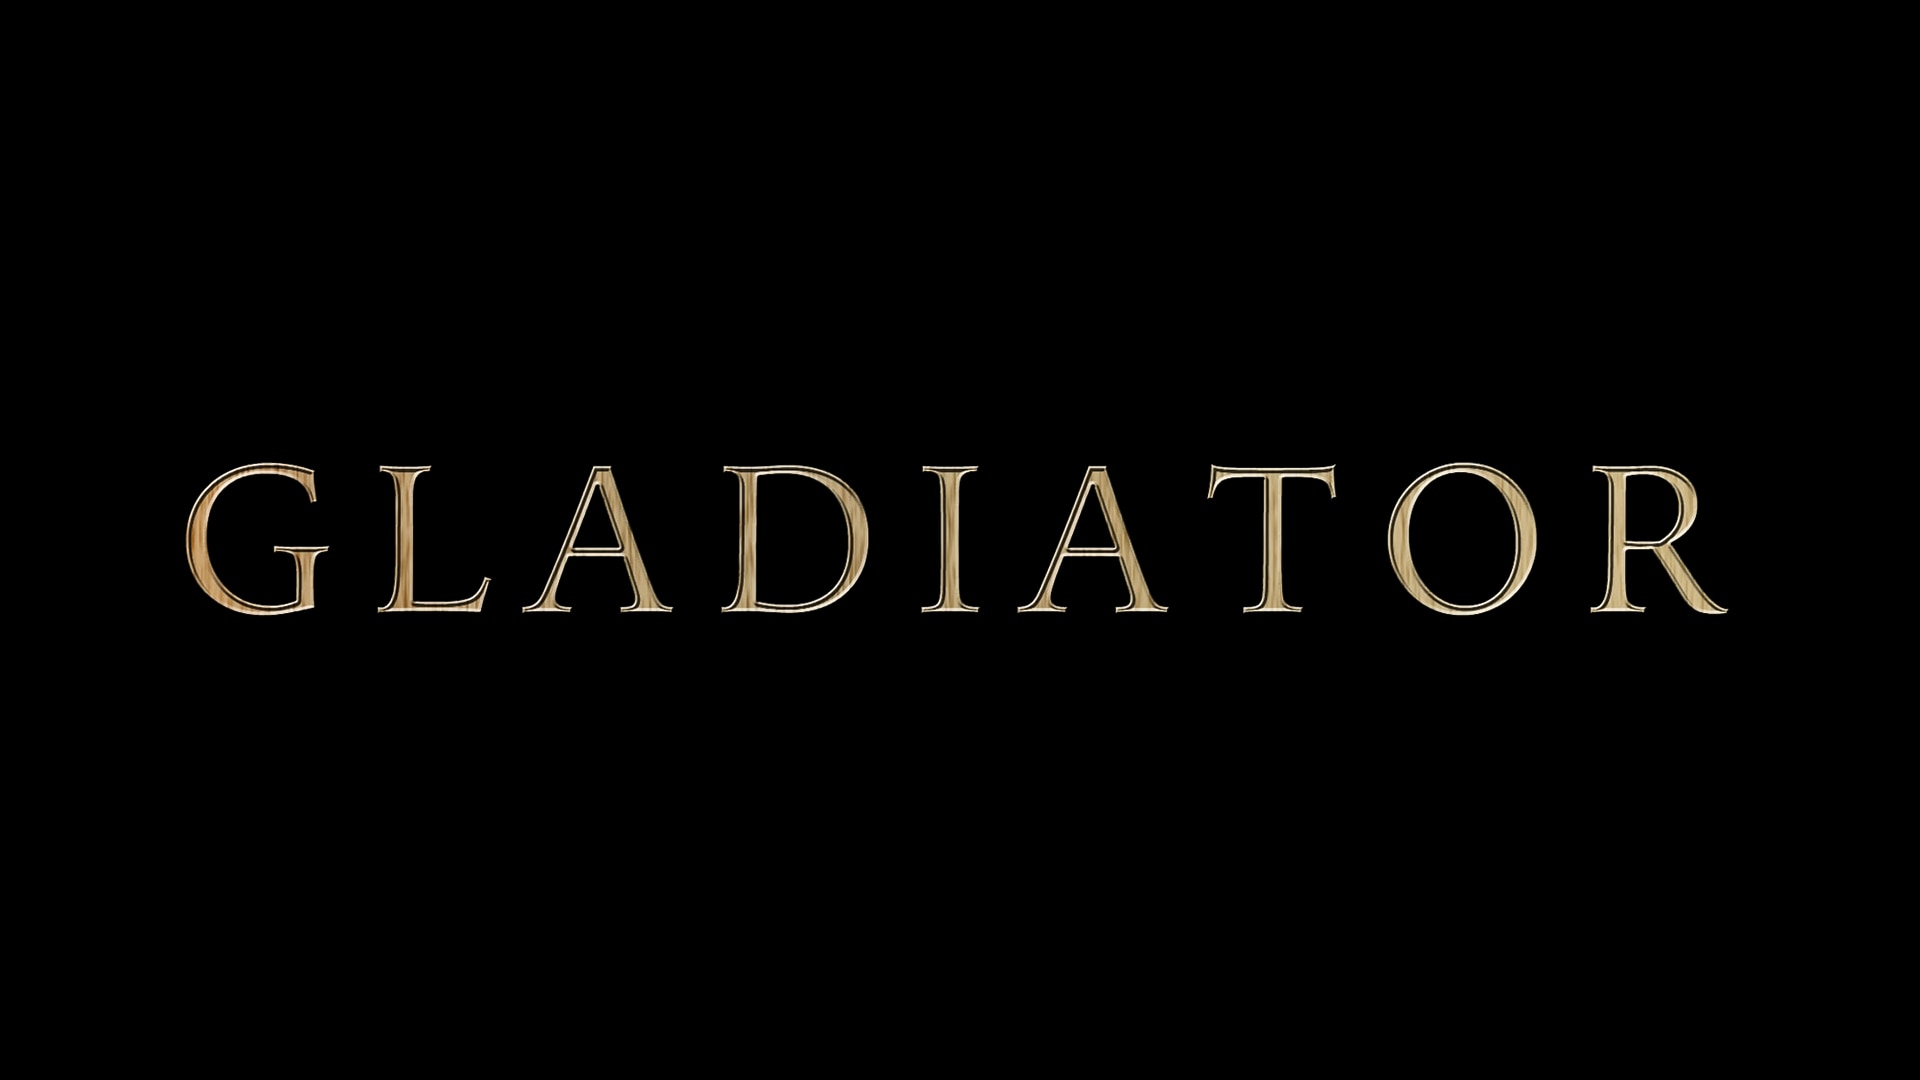 Gladiator-Movie-Logo-1920x1080.jpg